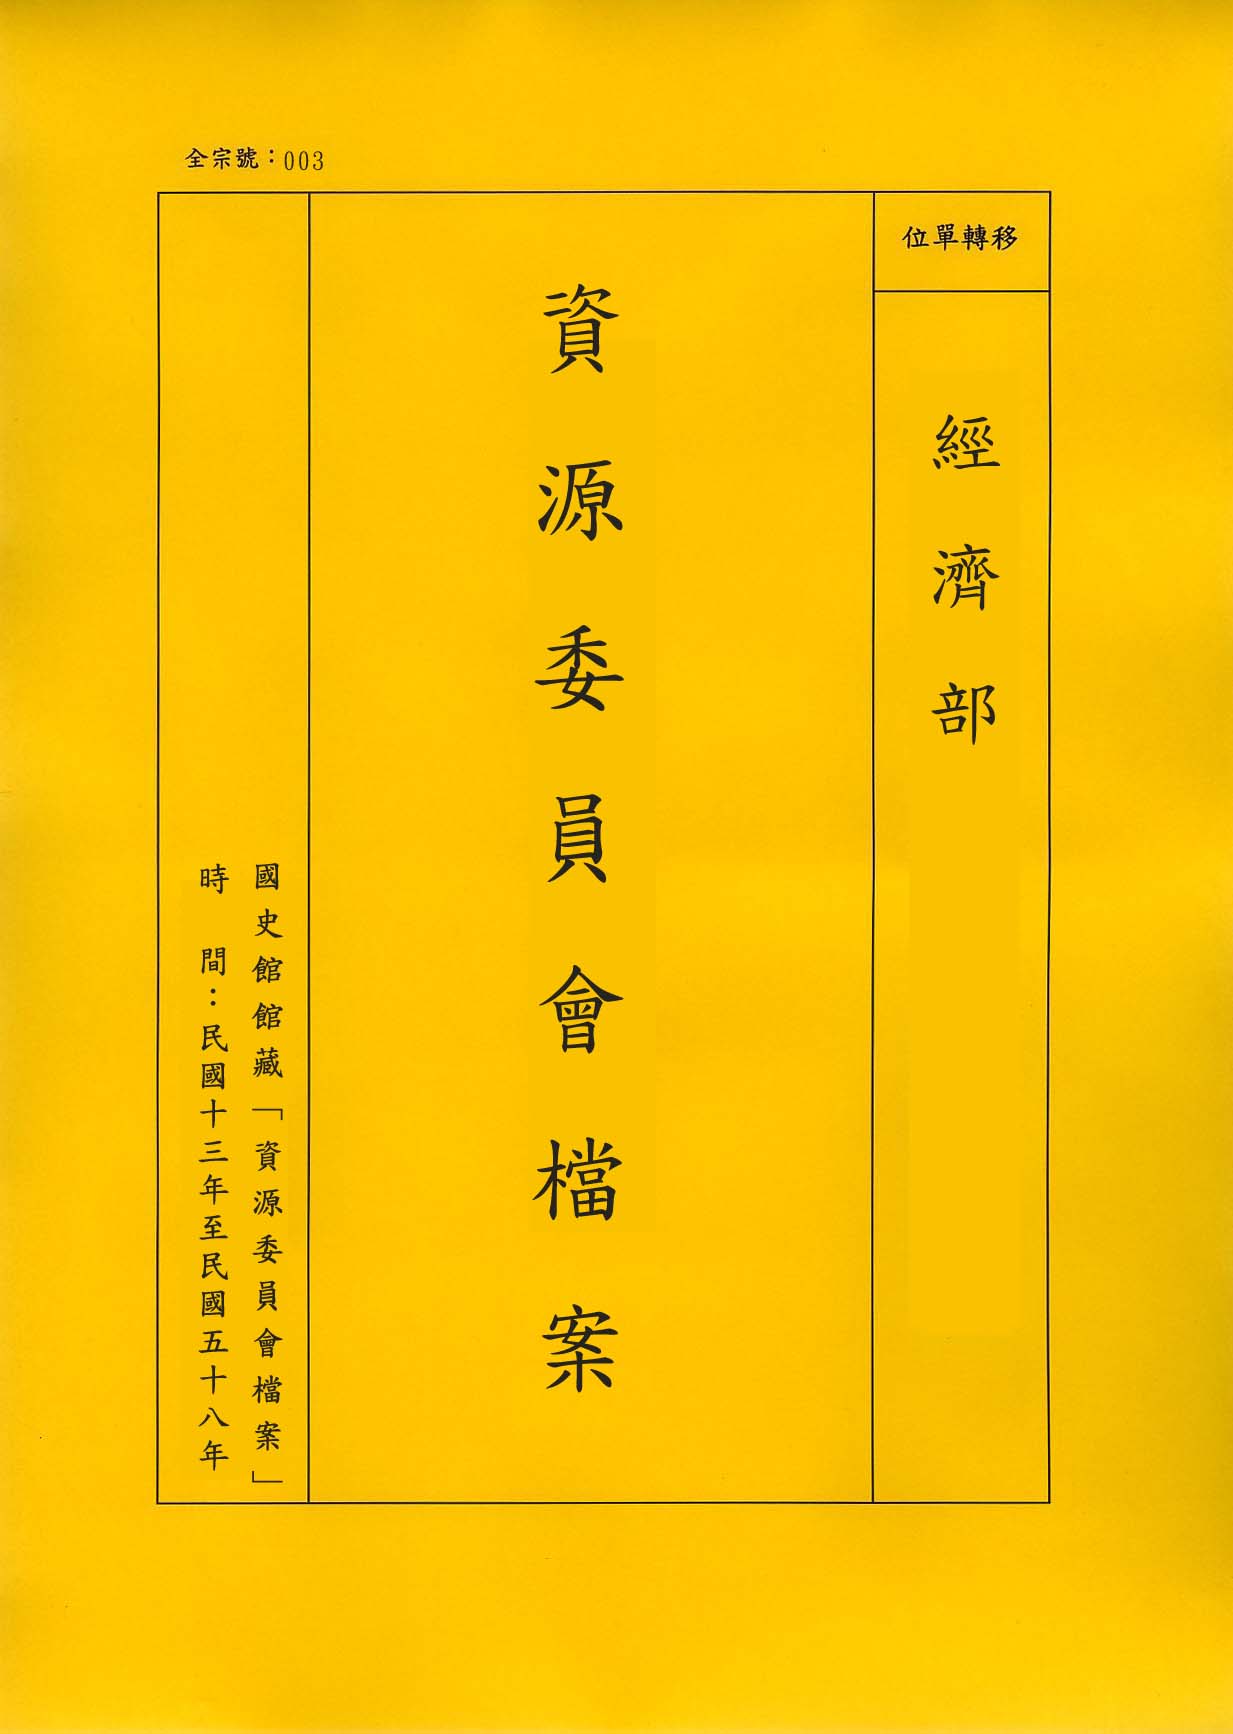 卷名:公司登記卡片─上海(三十七)(003-010304-0386)